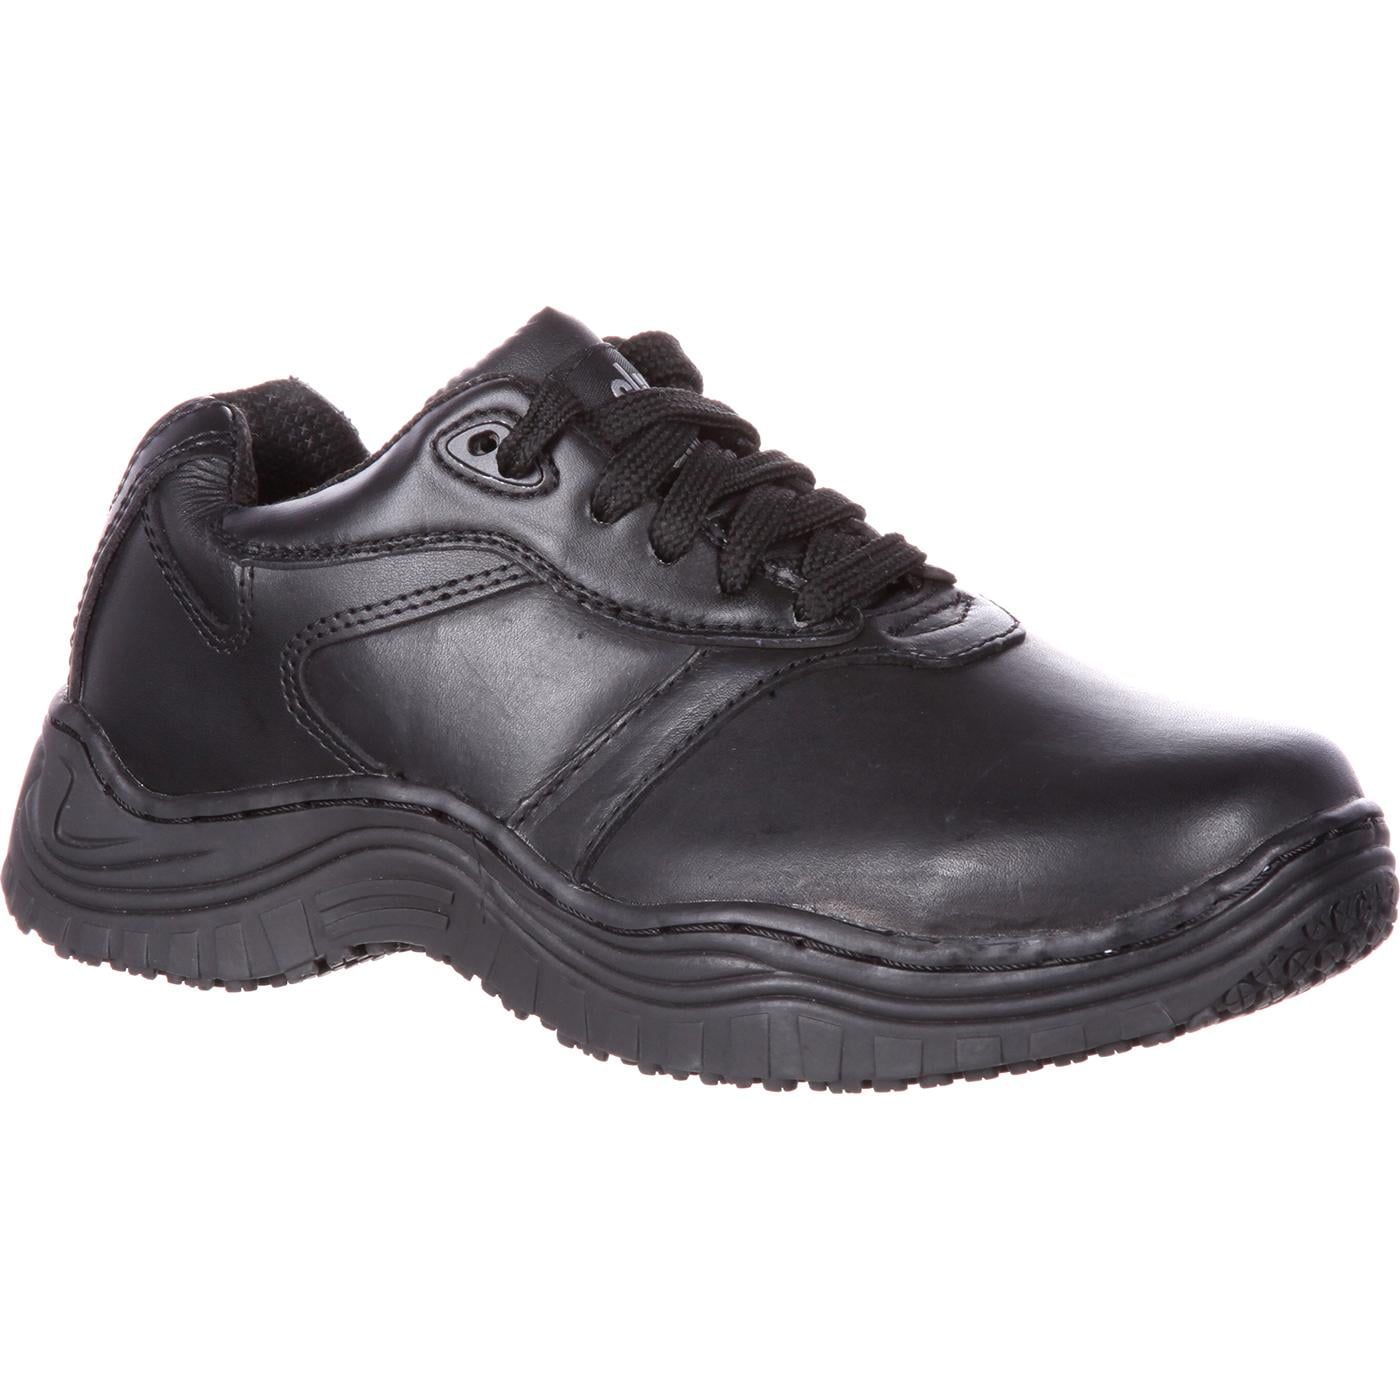 women's slip resistant work shoes walmart